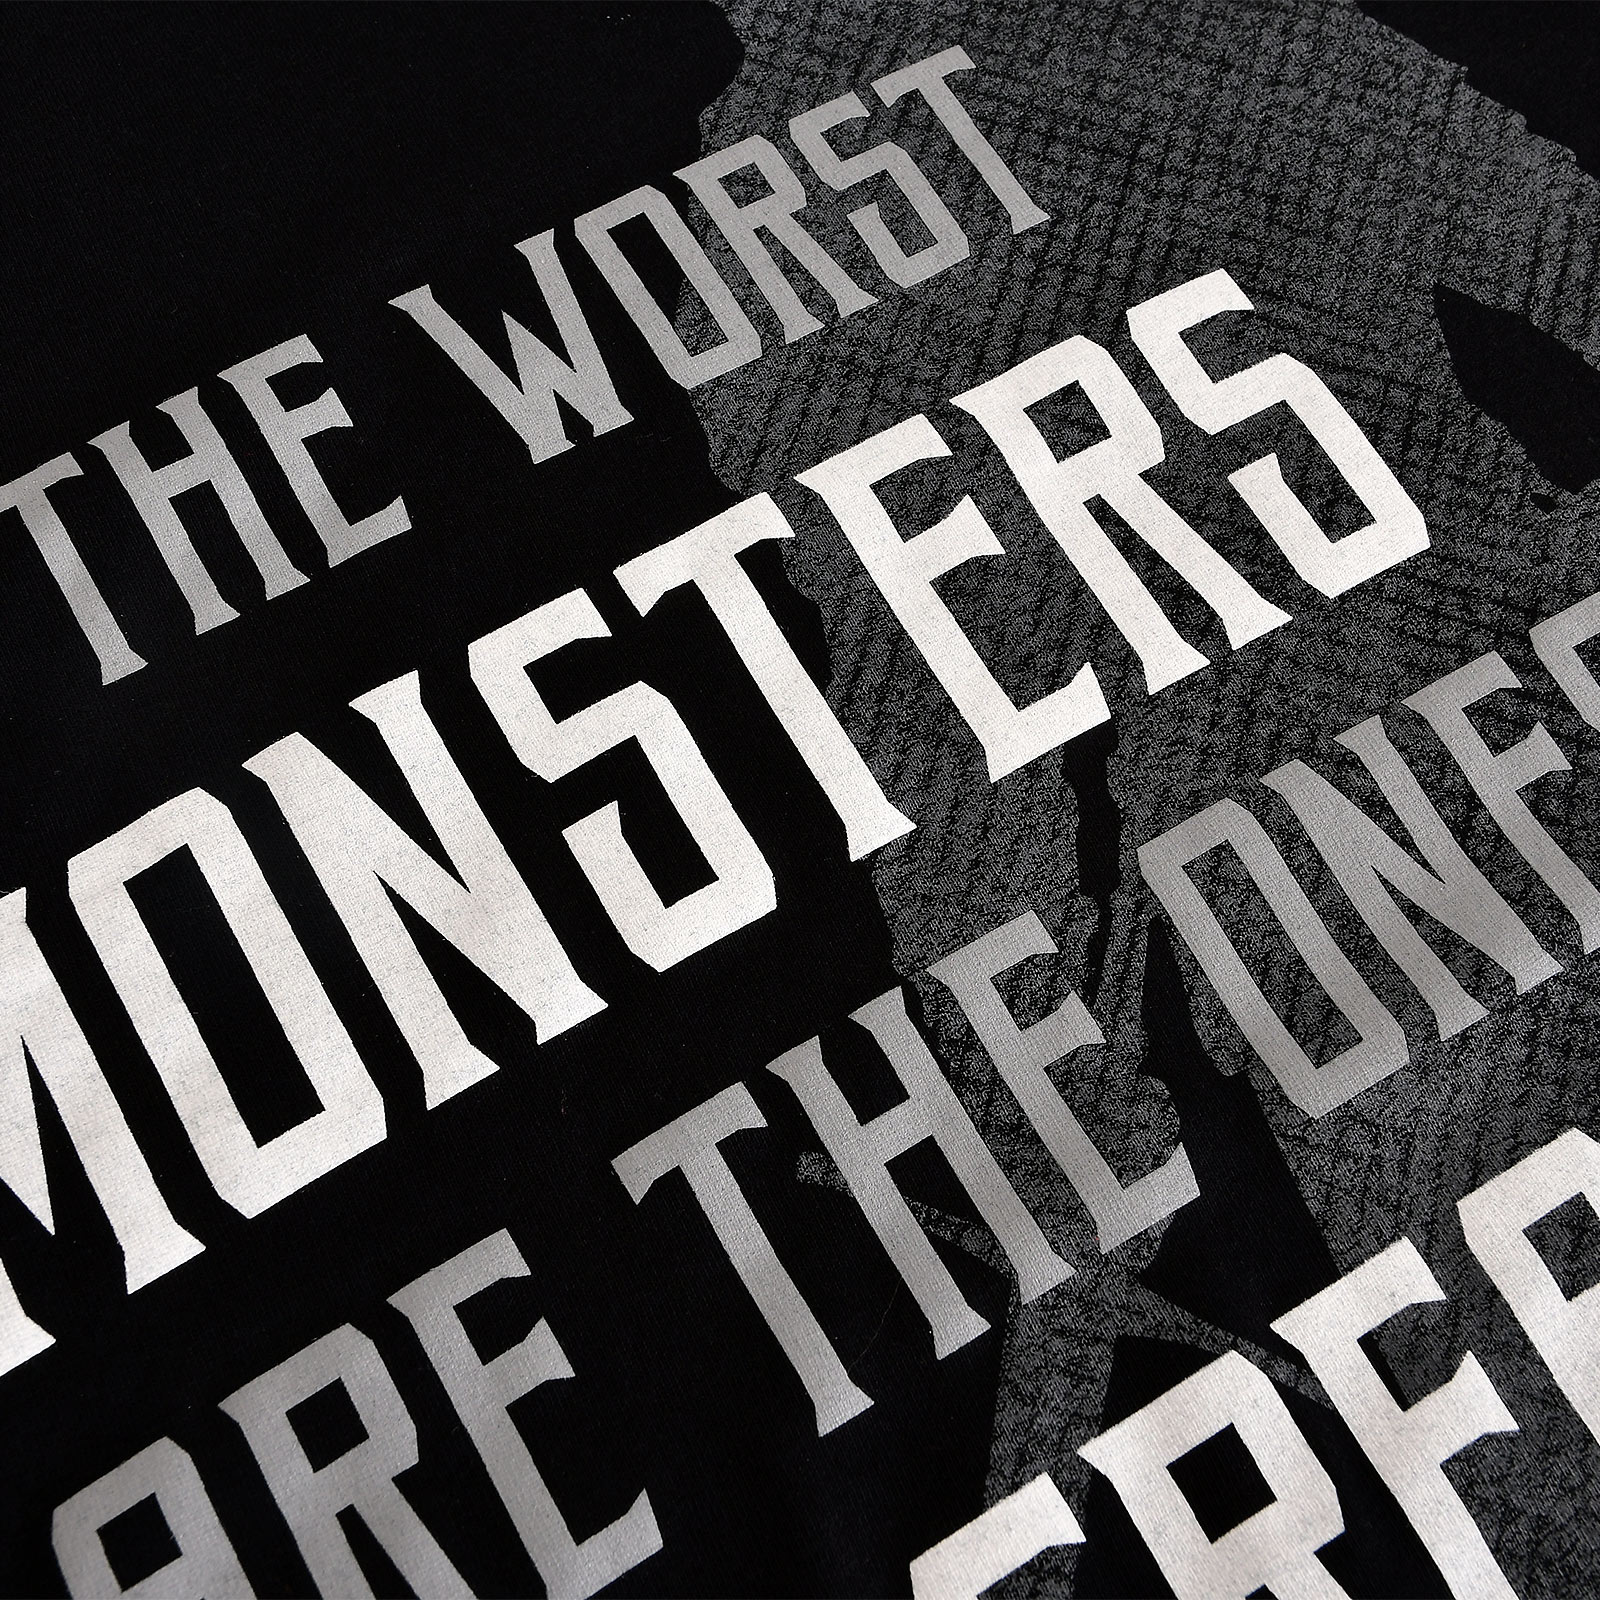 Monsters We Create T-Shirt für Witcher Fans schwarz